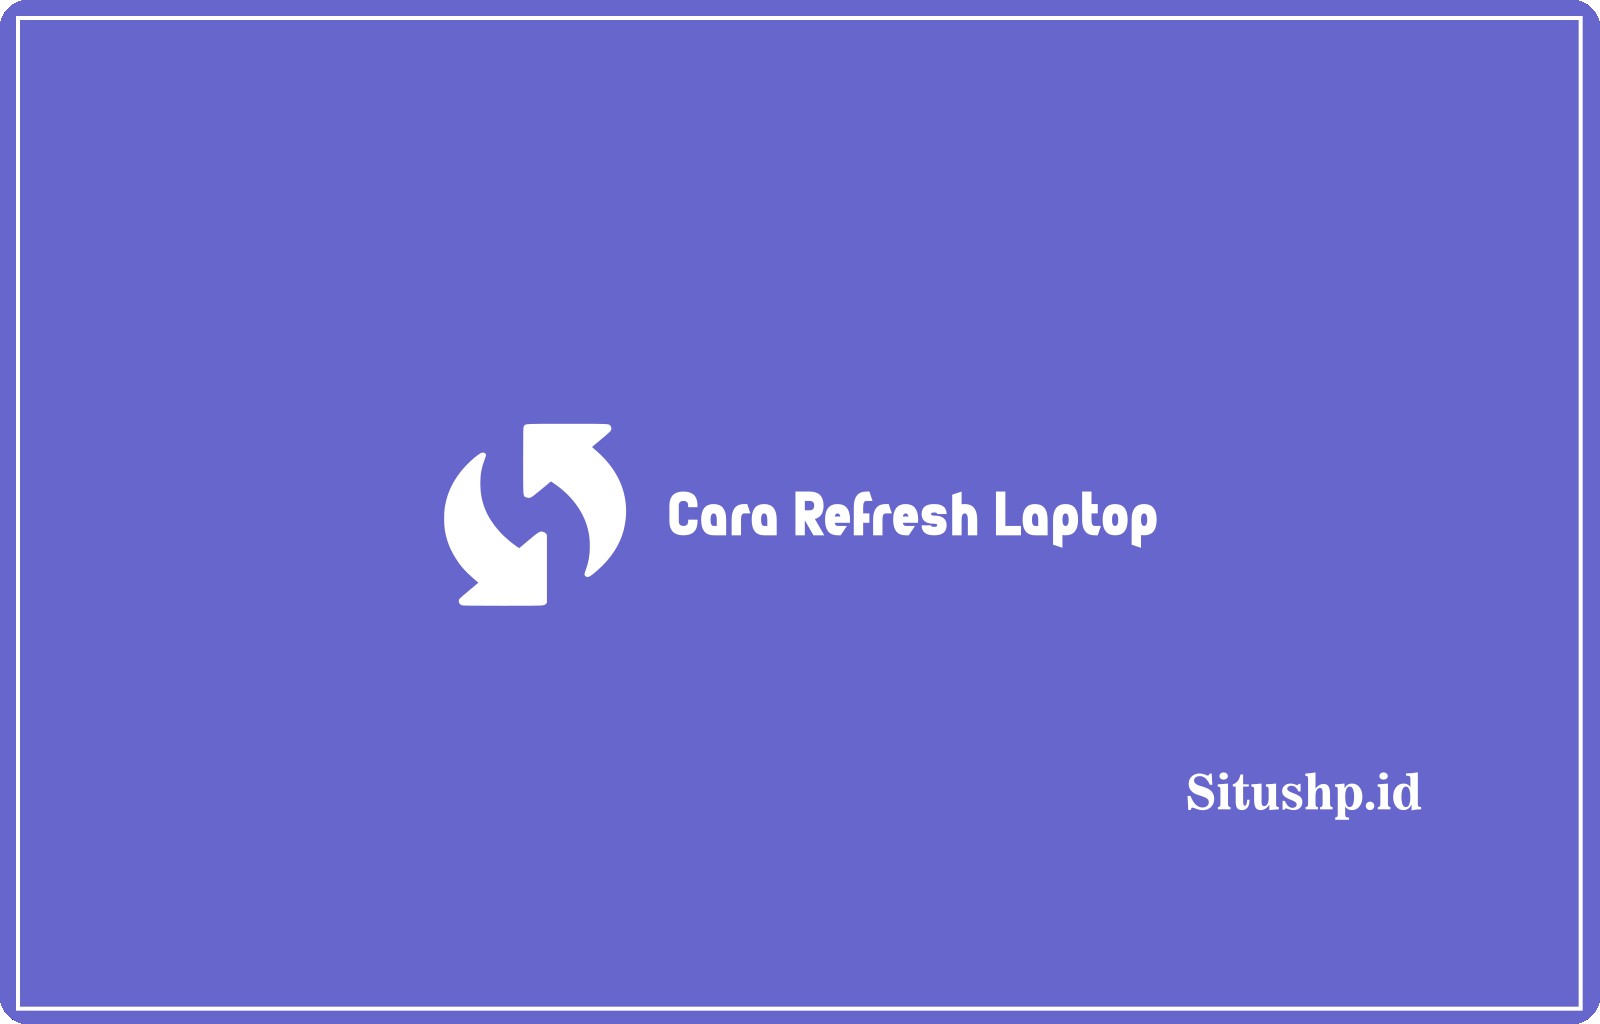 Cara Refresh Laptop